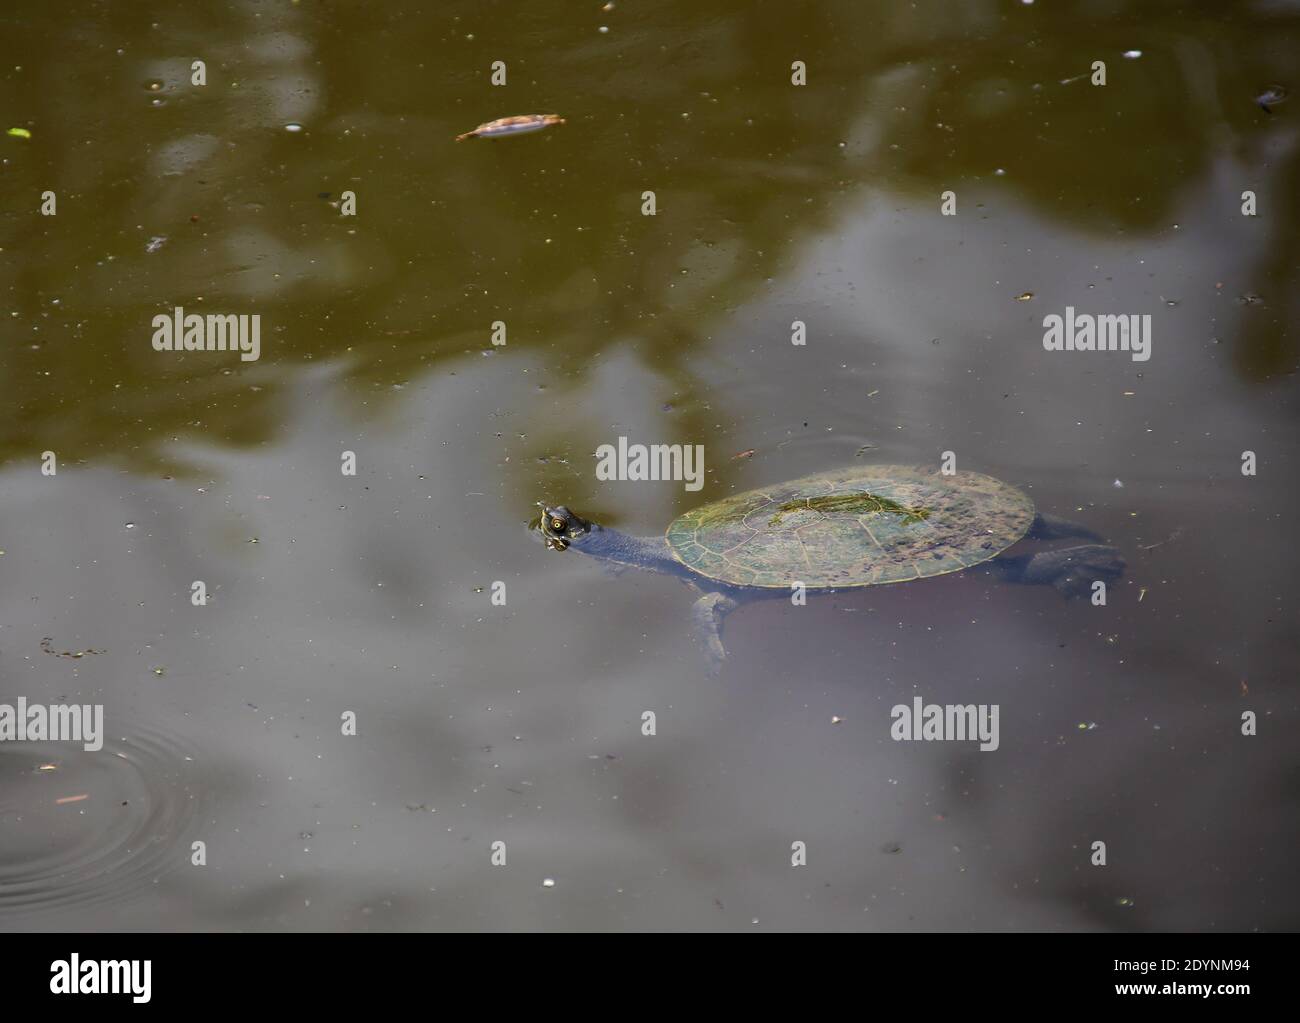 swimming Tortoise Stock Photo